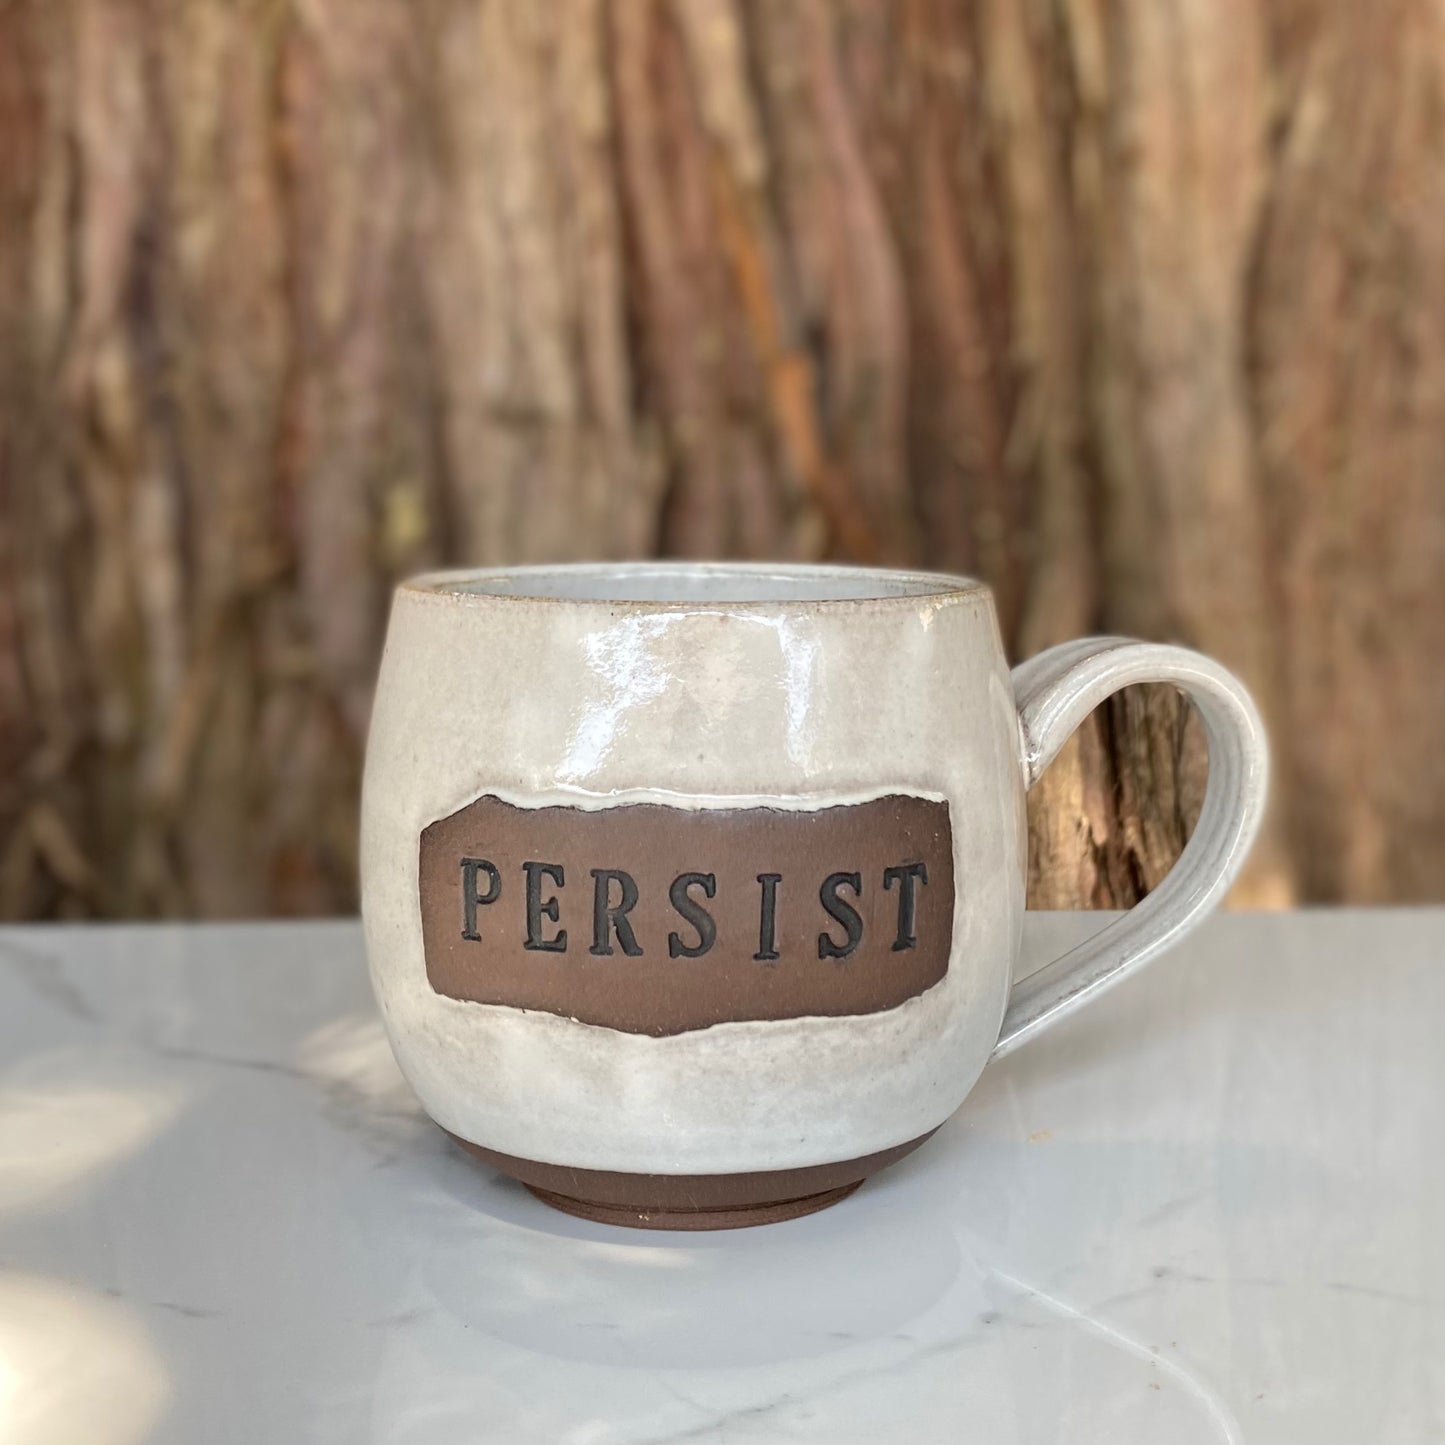 Persist Mug